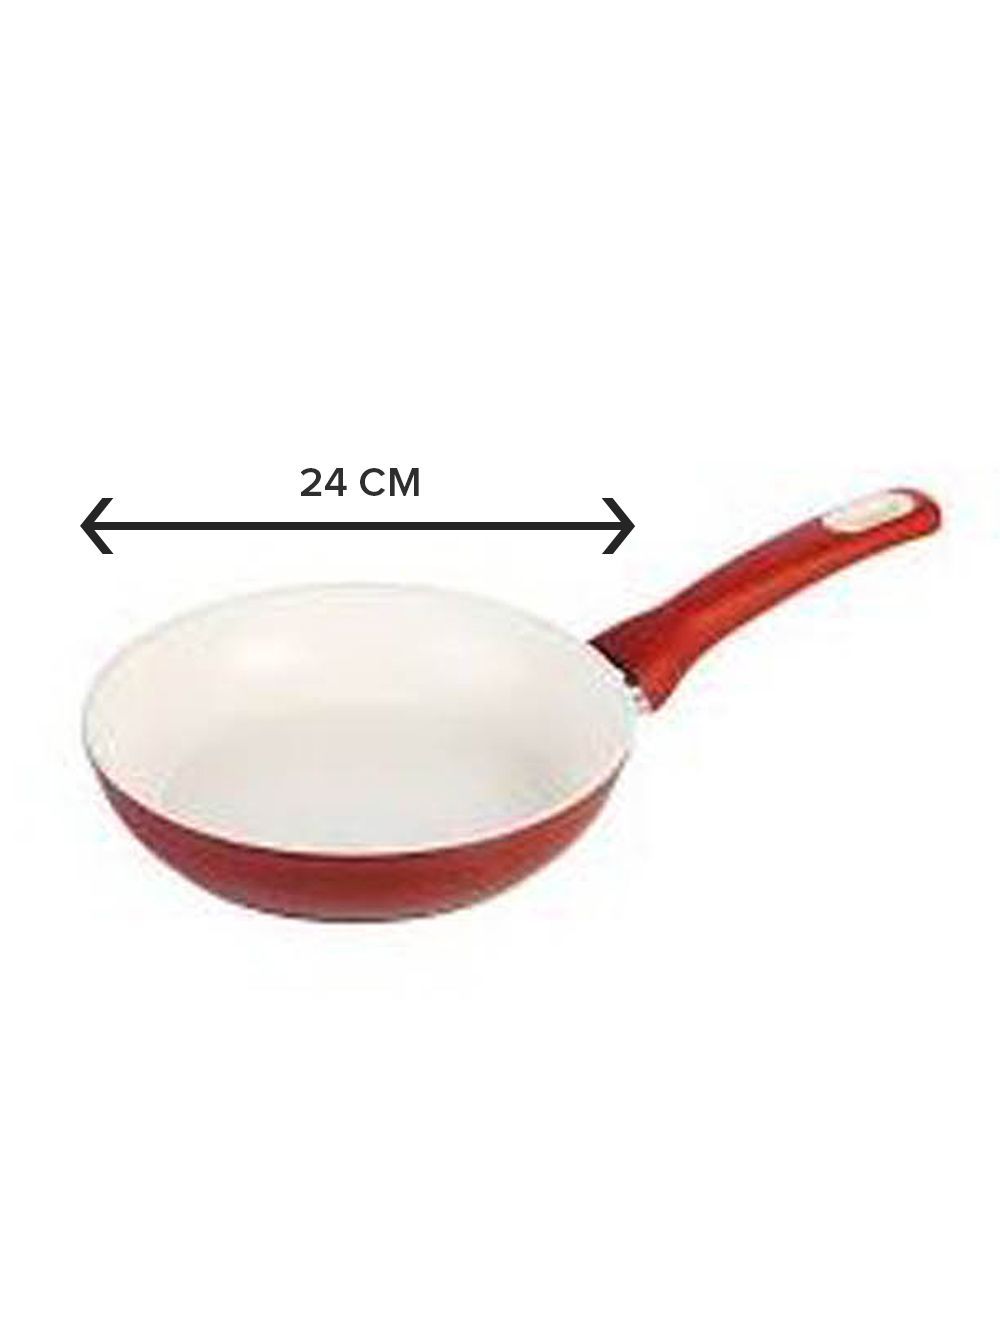 Frying Pan Vitapan 24cm